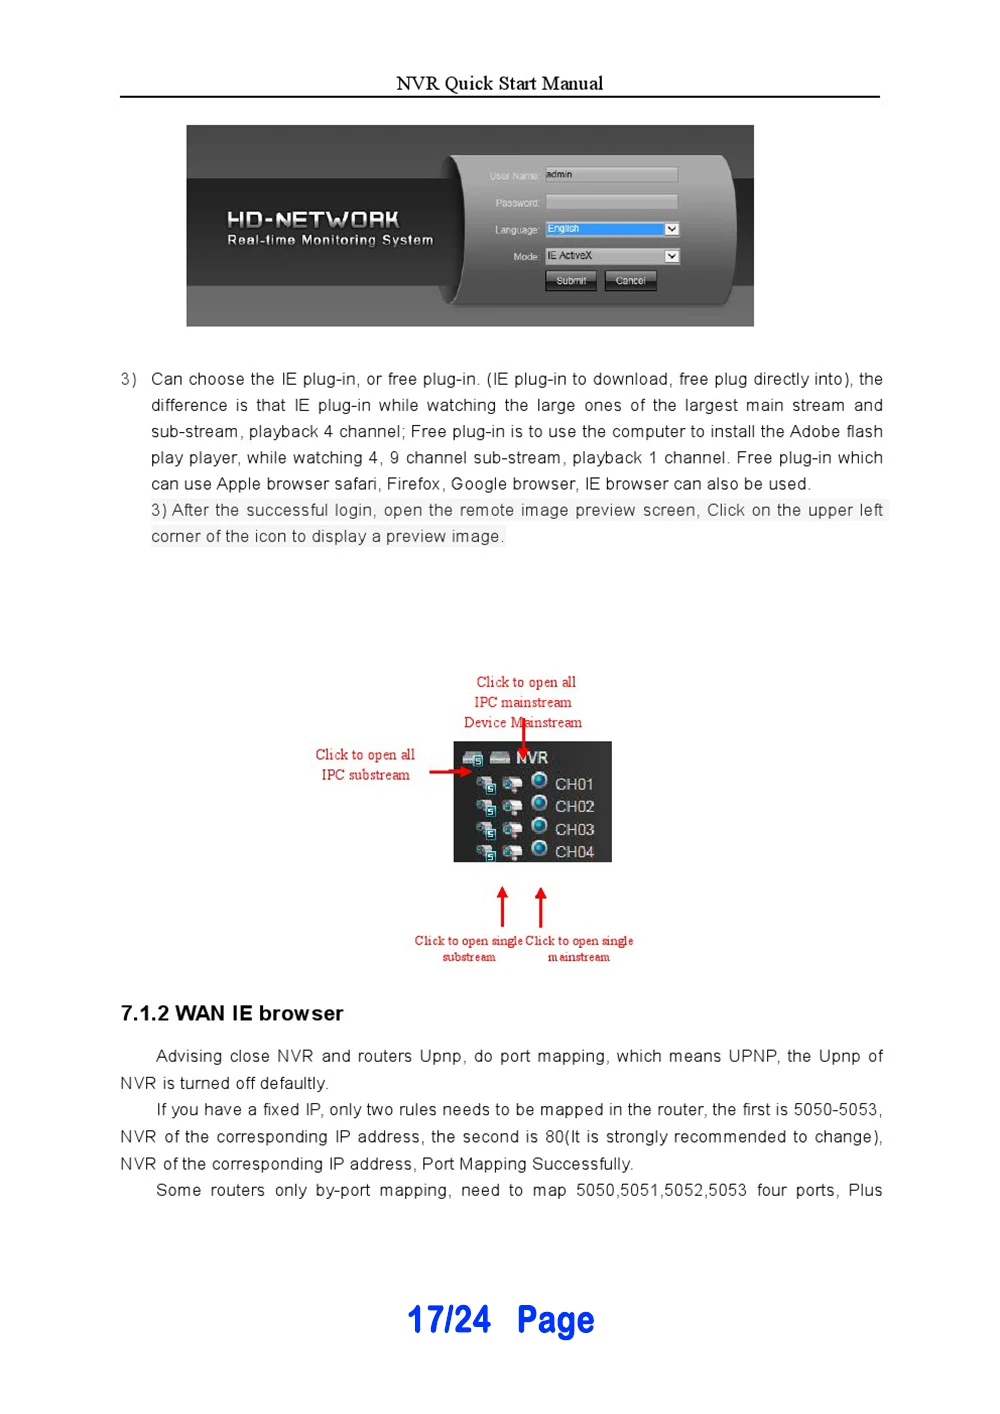 36ch 4 К/5mp/3mp/2mp IP Камера Регистраторы H.265 безопасности HDMI VGA NVR 4 sata ONVIF аудио вход обнаружения движения оповещение по электронной почте Функция